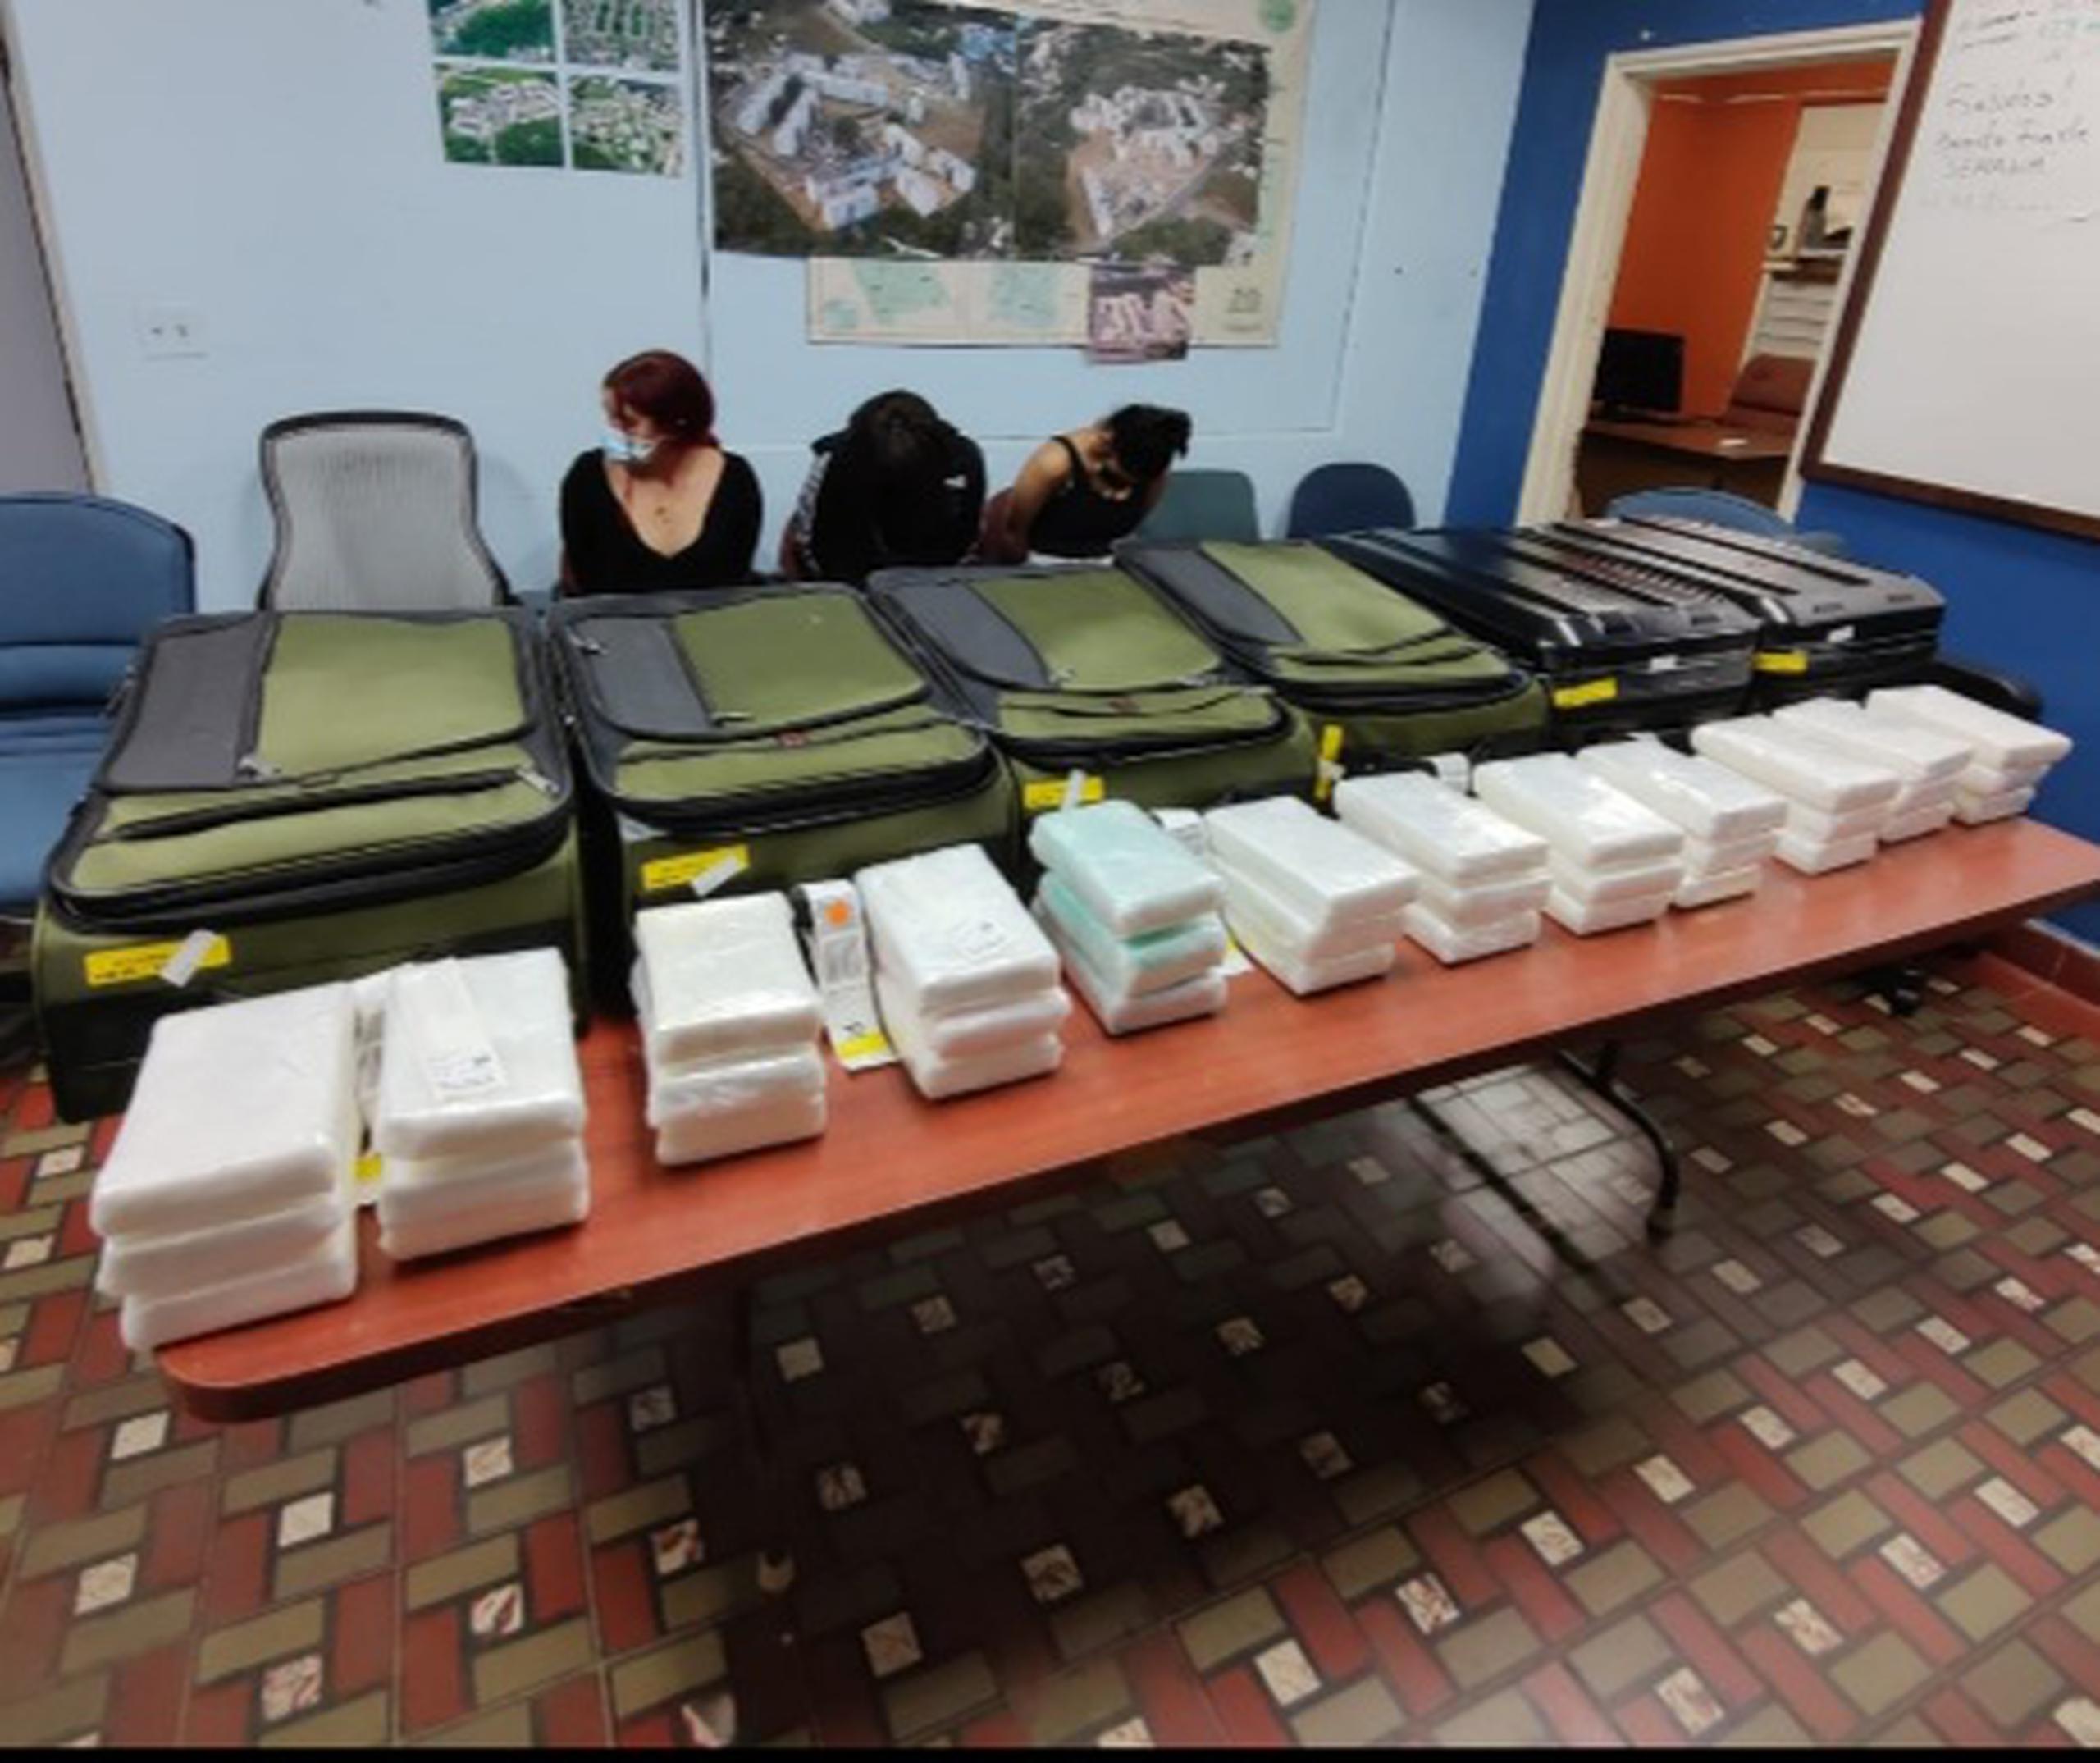 Las tres pasajeras fueron arrestadas mientras transportaban en sus maletas un total de 36 kilos de cocaína, antes de abordar un vuelo con destino a Boston, Massachusetts.